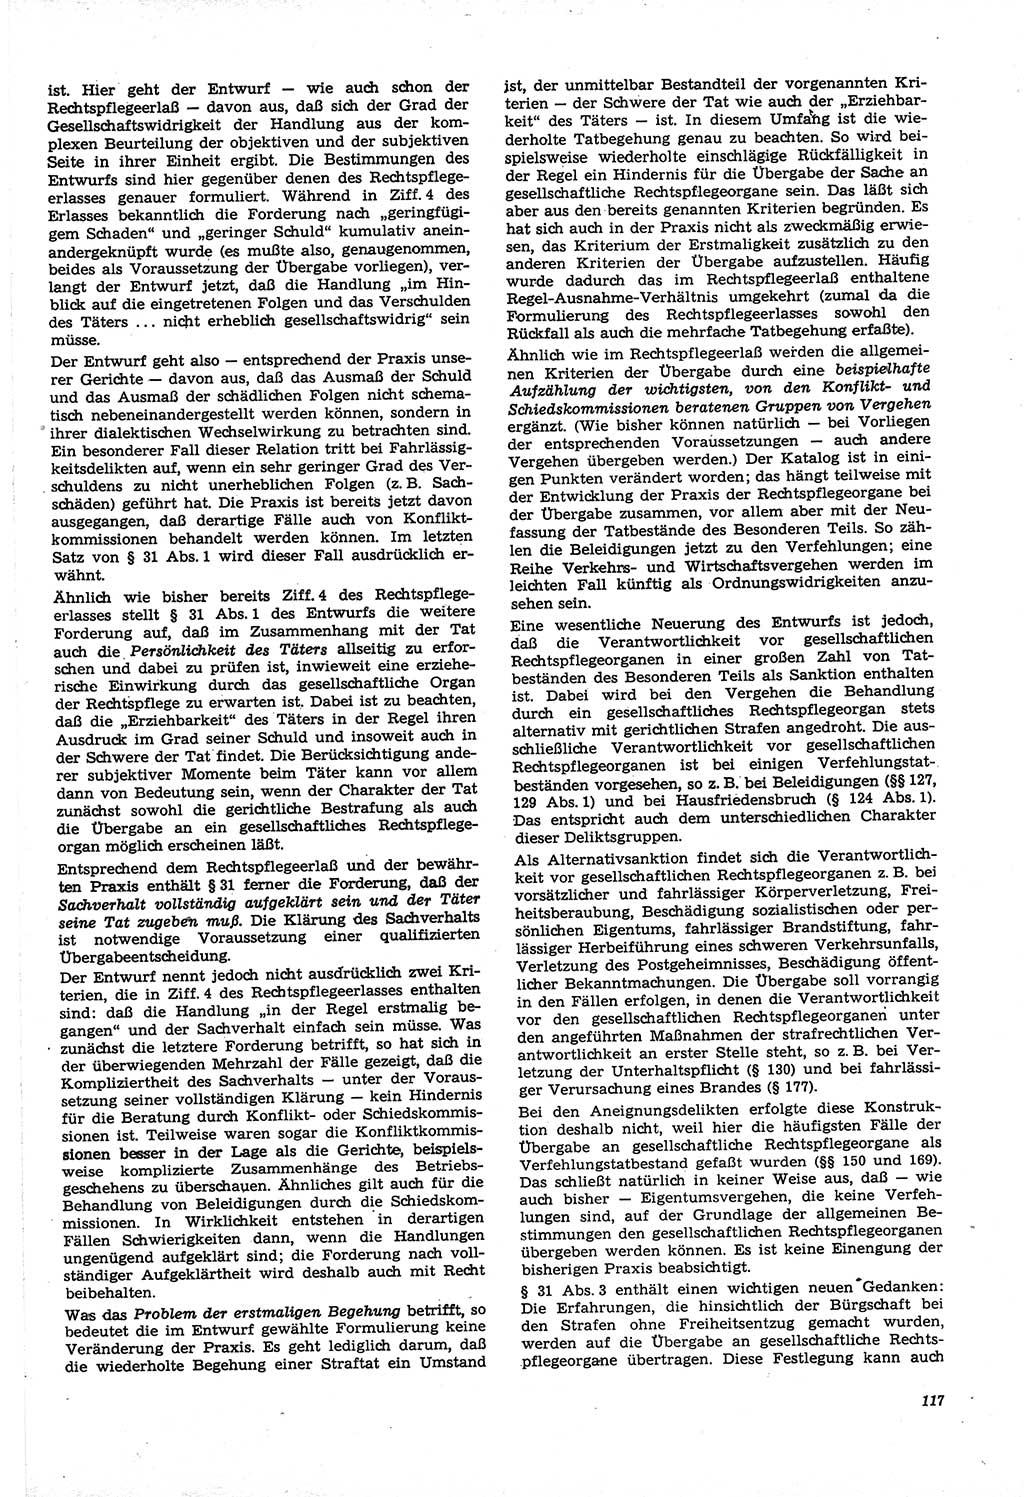 Neue Justiz (NJ), Zeitschrift für Recht und Rechtswissenschaft [Deutsche Demokratische Republik (DDR)], 21. Jahrgang 1967, Seite 117 (NJ DDR 1967, S. 117)